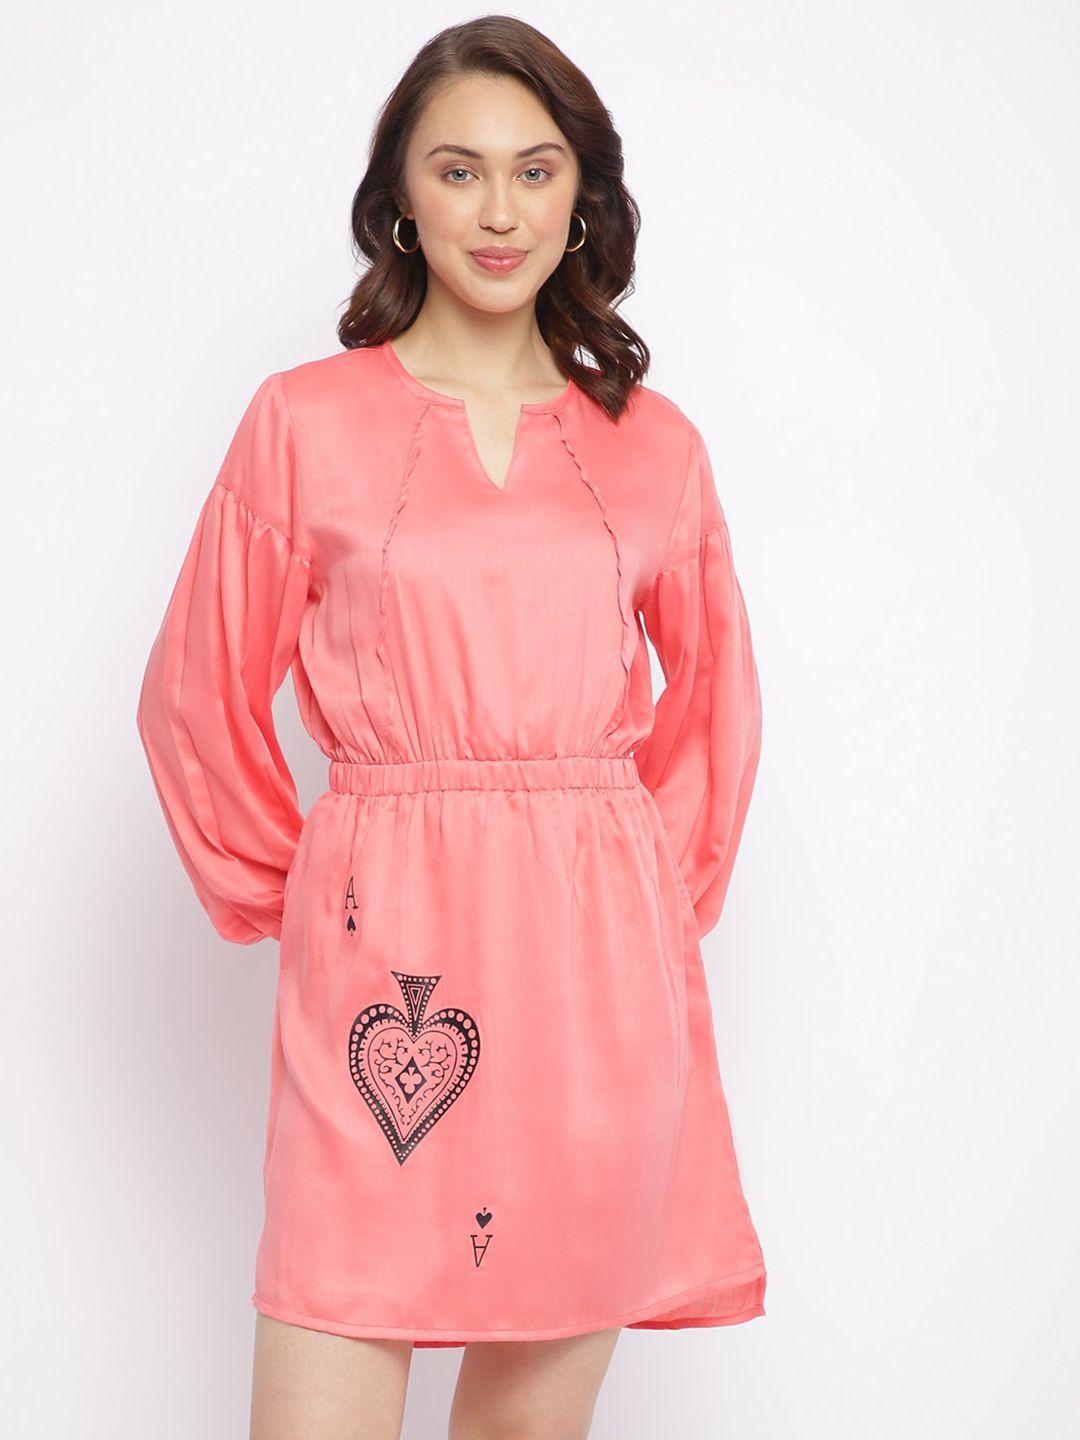 am ma peach-coloured printed blouson dress